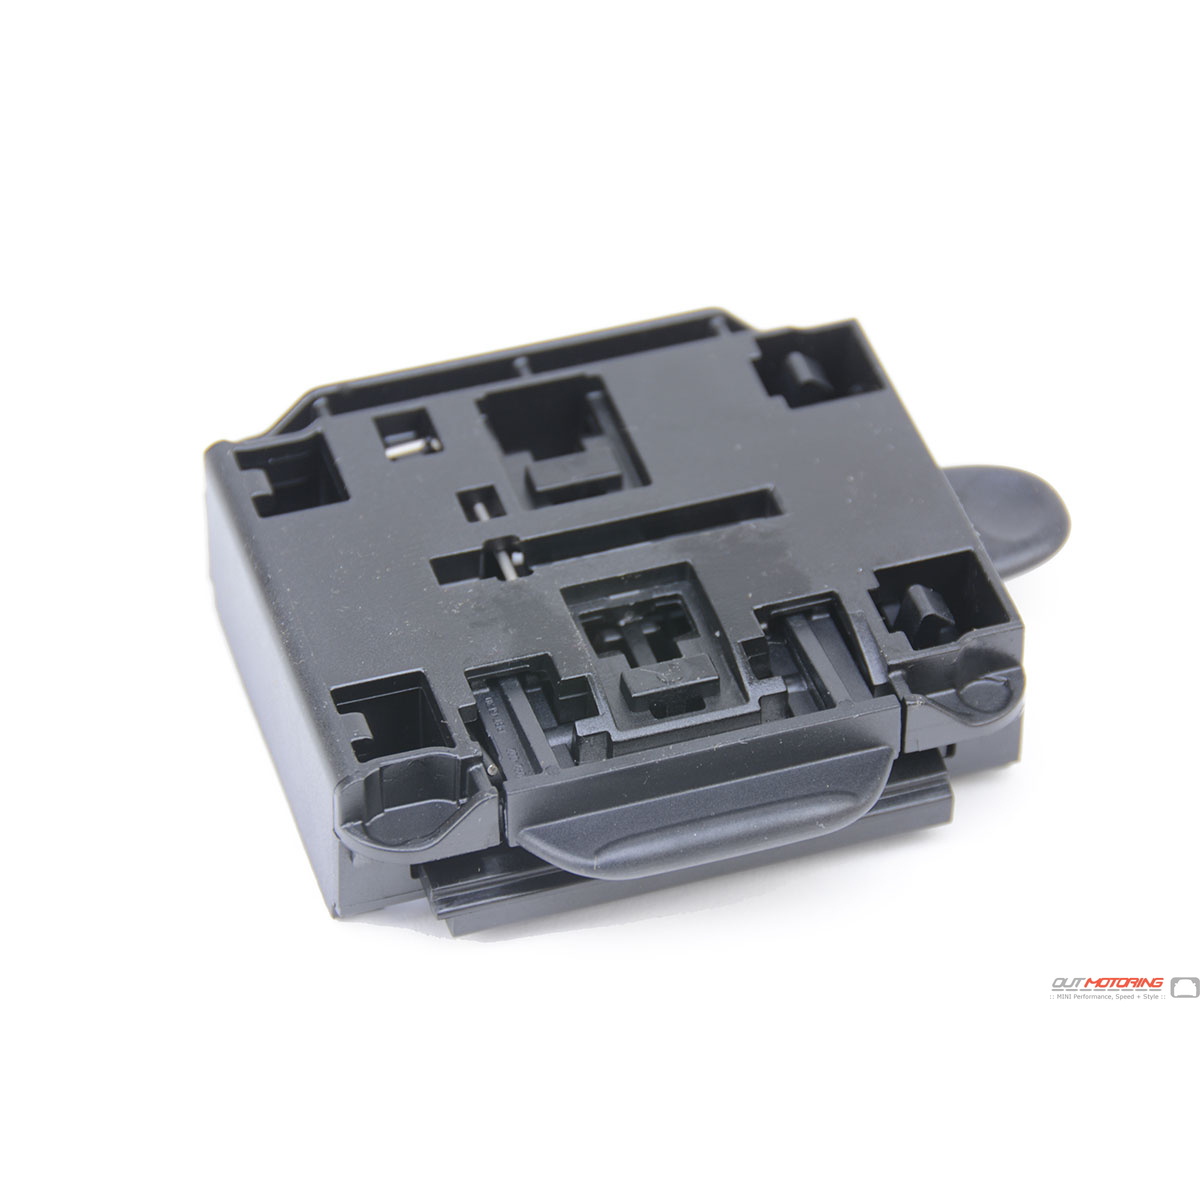 MINI Cooper MINI R60 Adapter 51169809203 Plate + Base Parts Accessories Pacemen Countryman - MINI Cooper Cooper